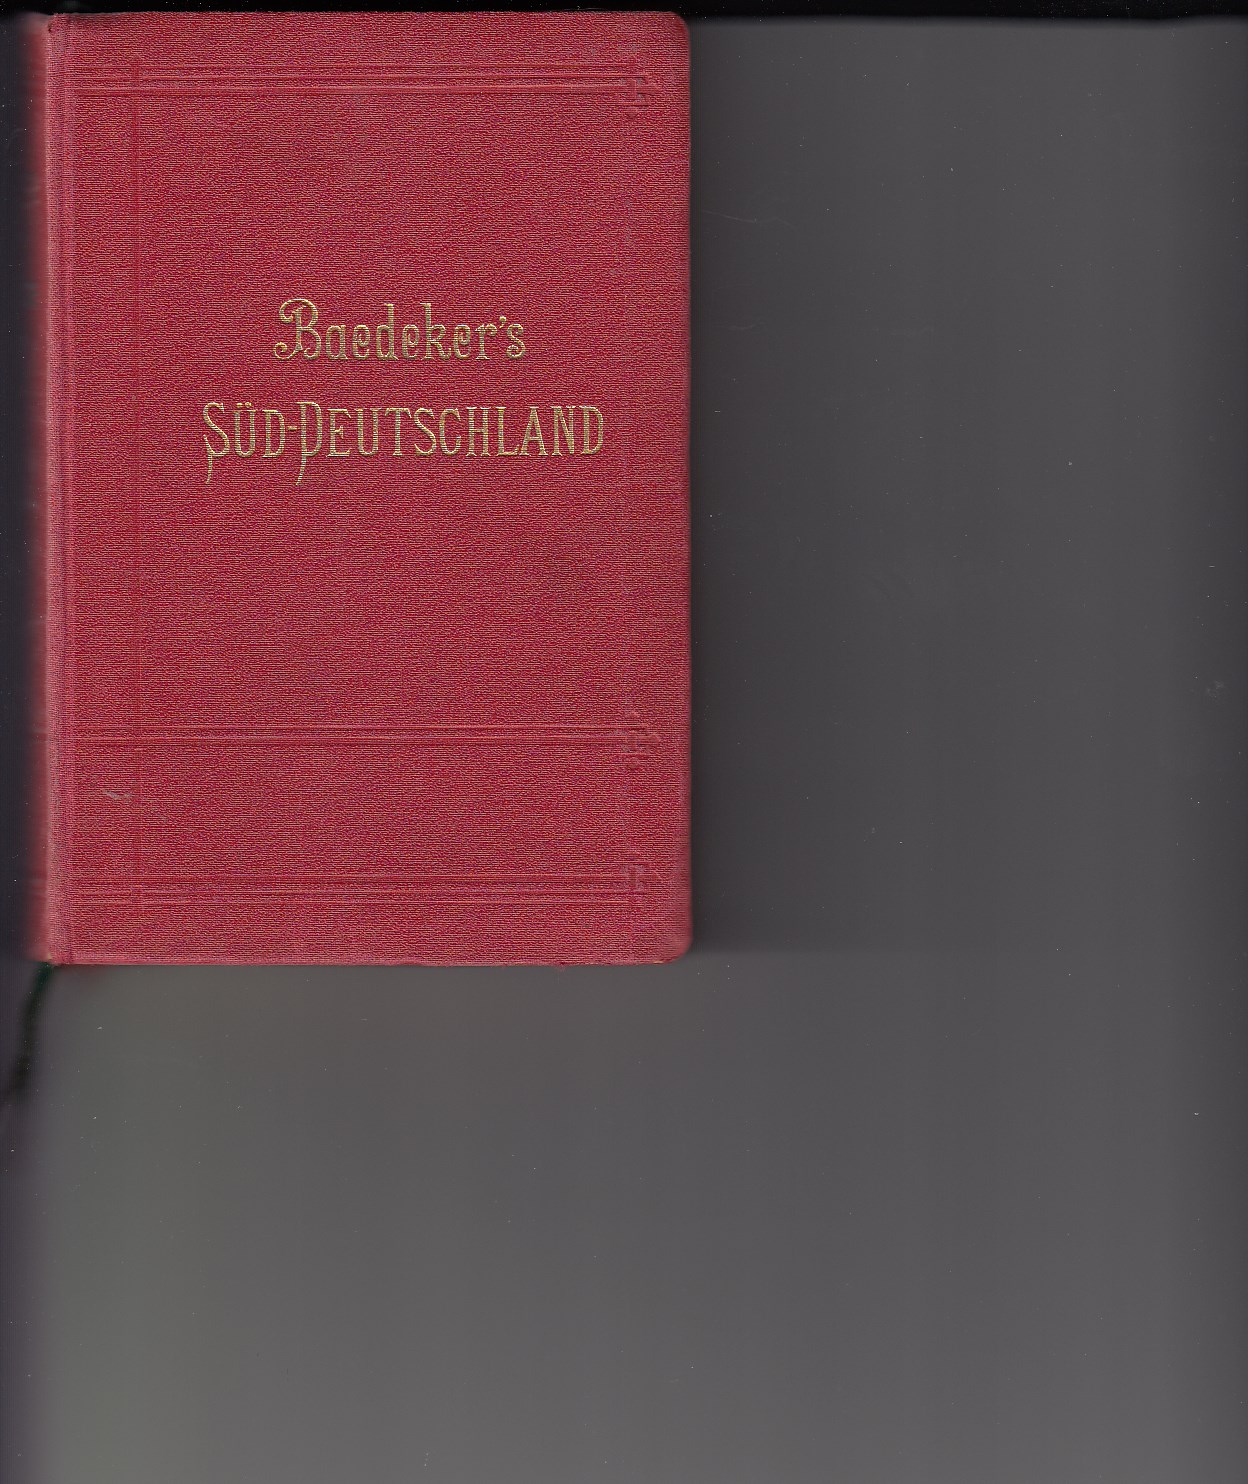 Baedeker, Karl:  Handbuch fr Reisende : Sddeutschland. 